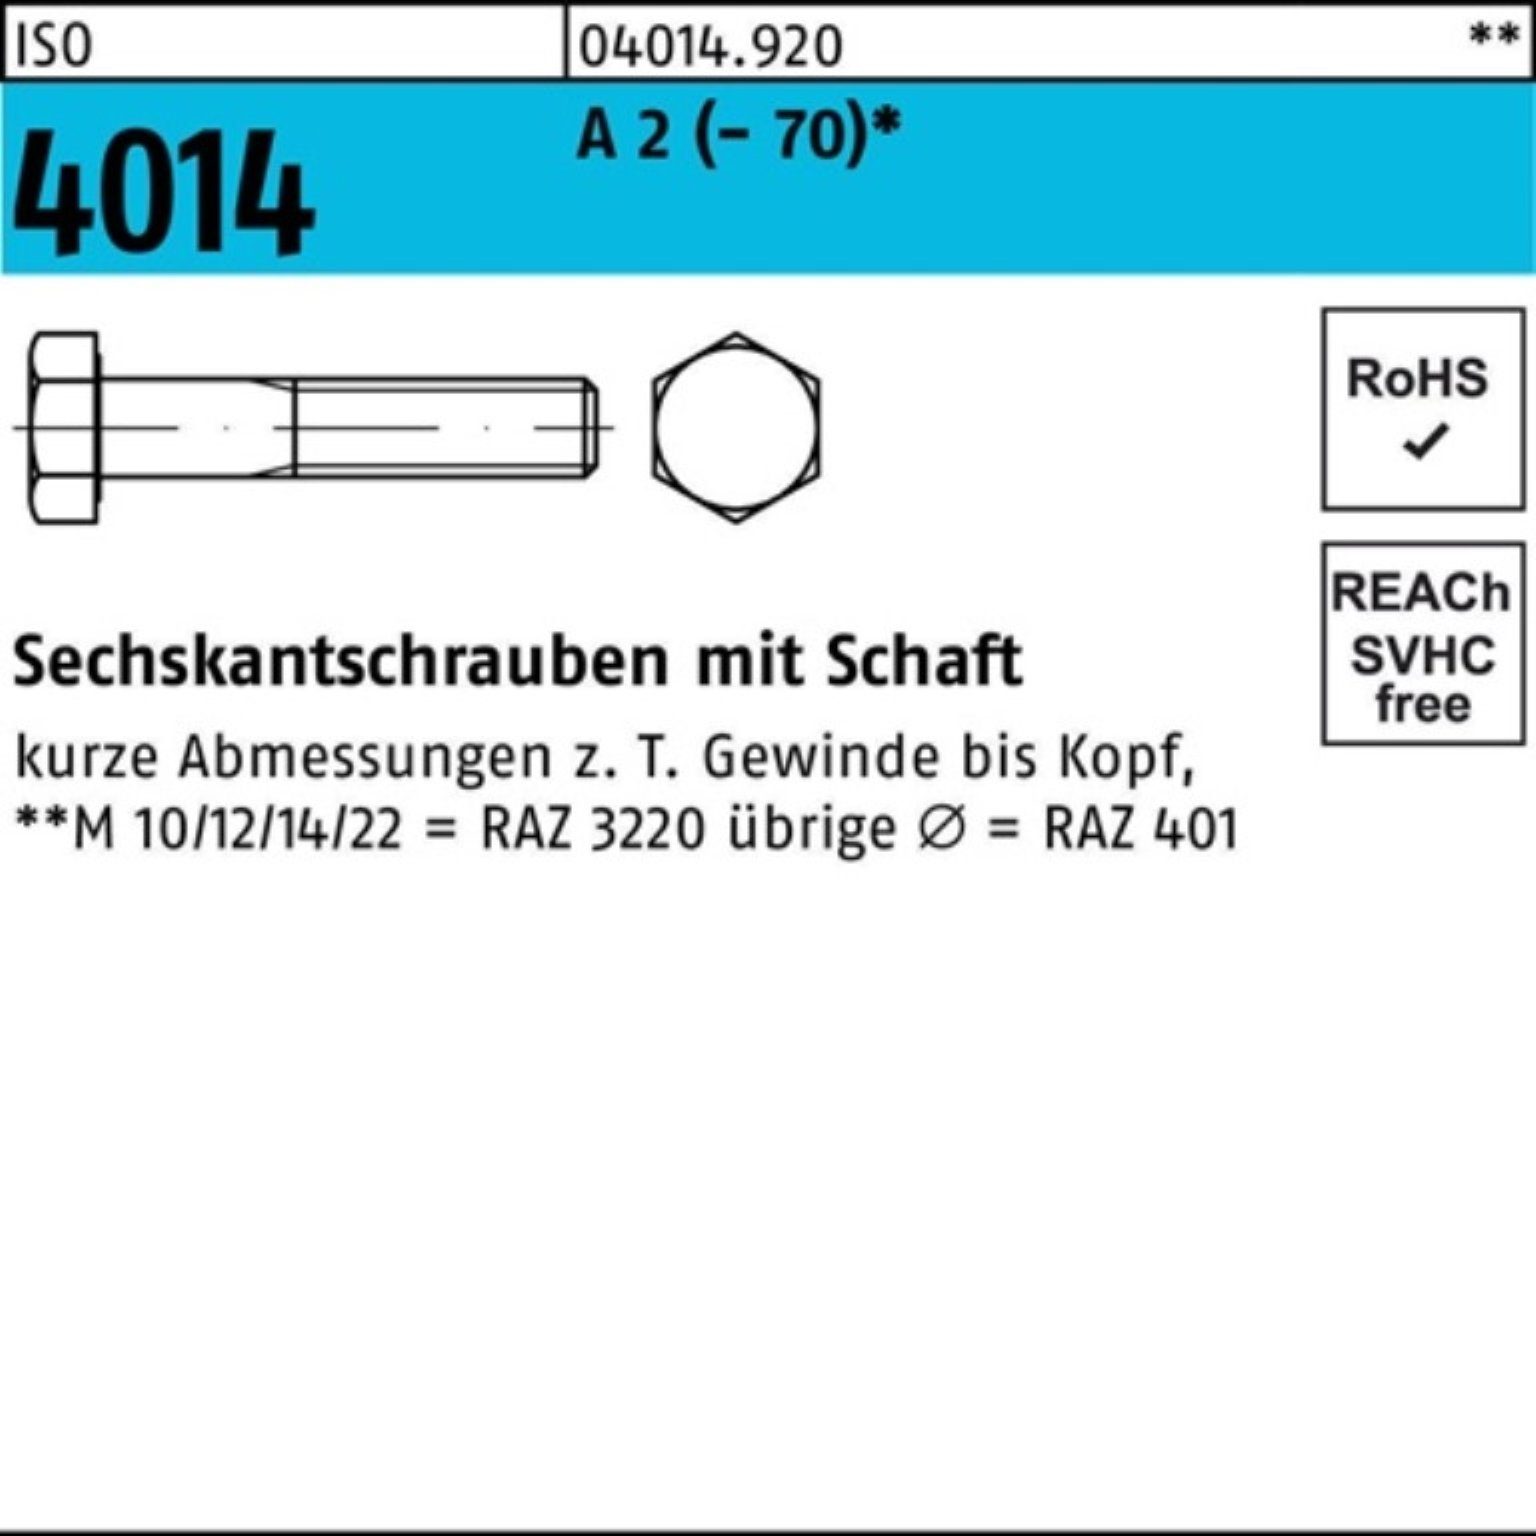 Bufab Sechskantschraube 100er Pack Sechskantschraube ISO 4014 Schaft M18x 120 A 2 (70) 25 St